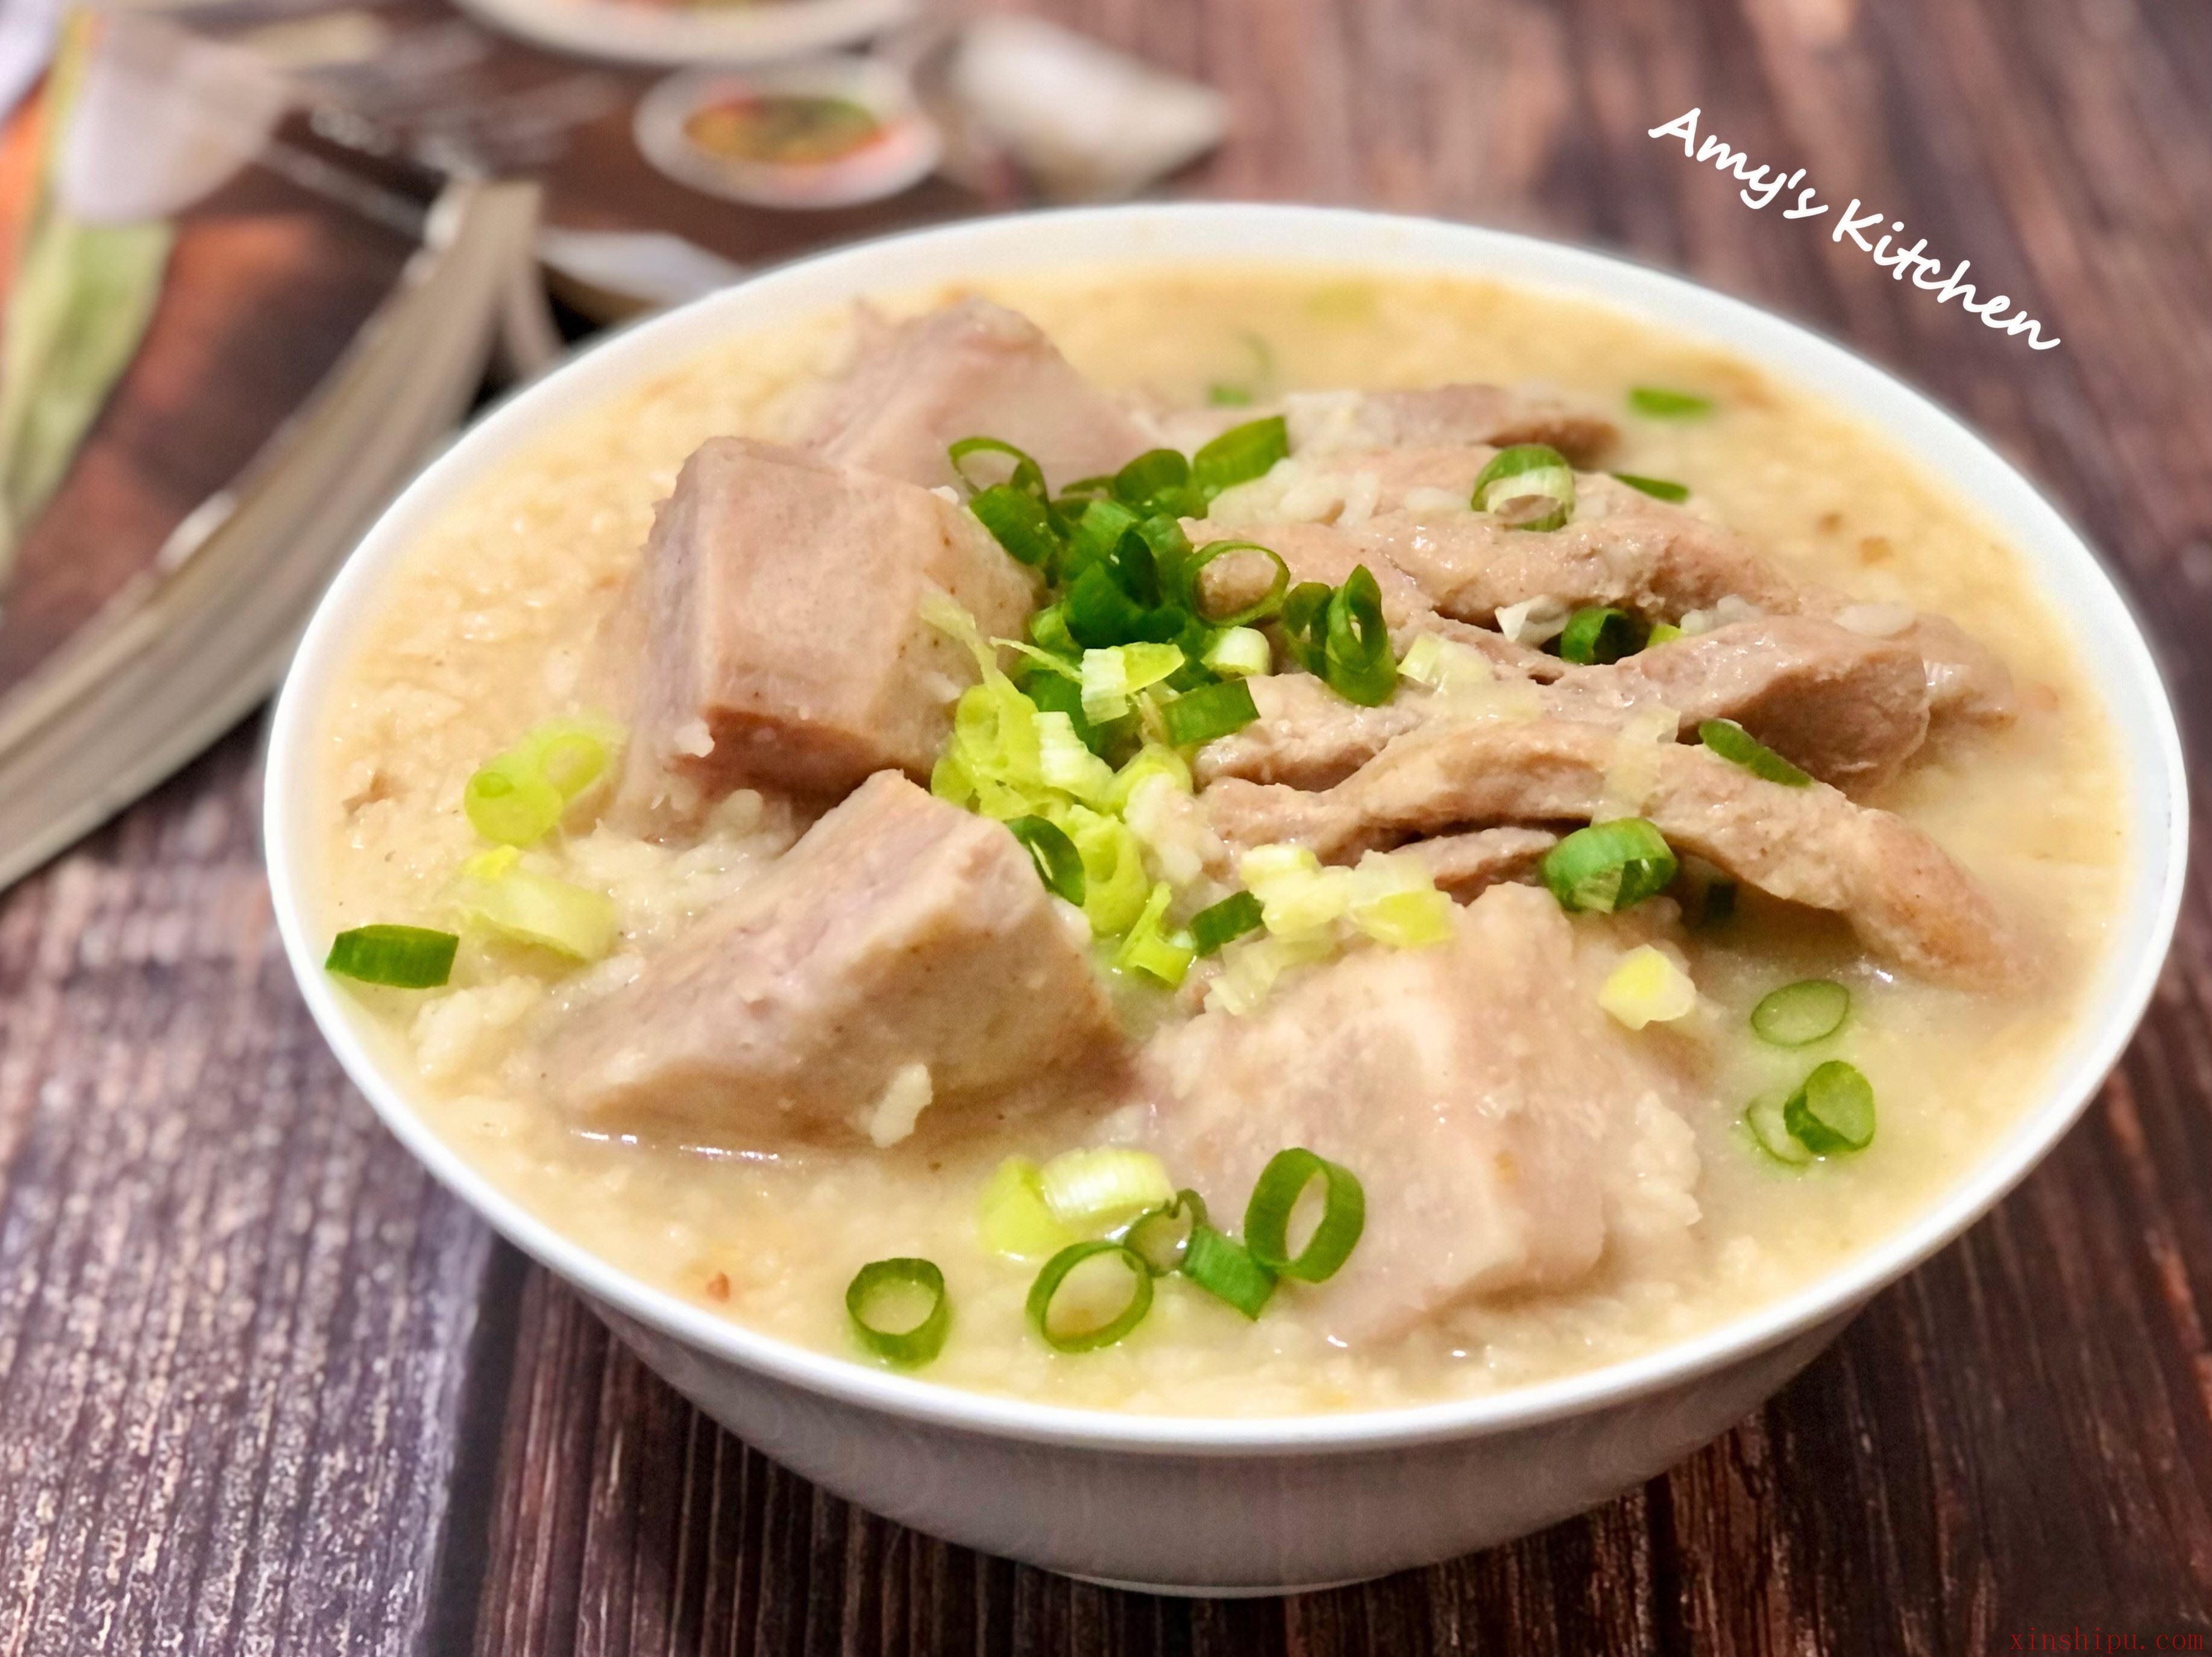 芋香瘦肉粥 by Amy的烘焙廚房 - 愛料理